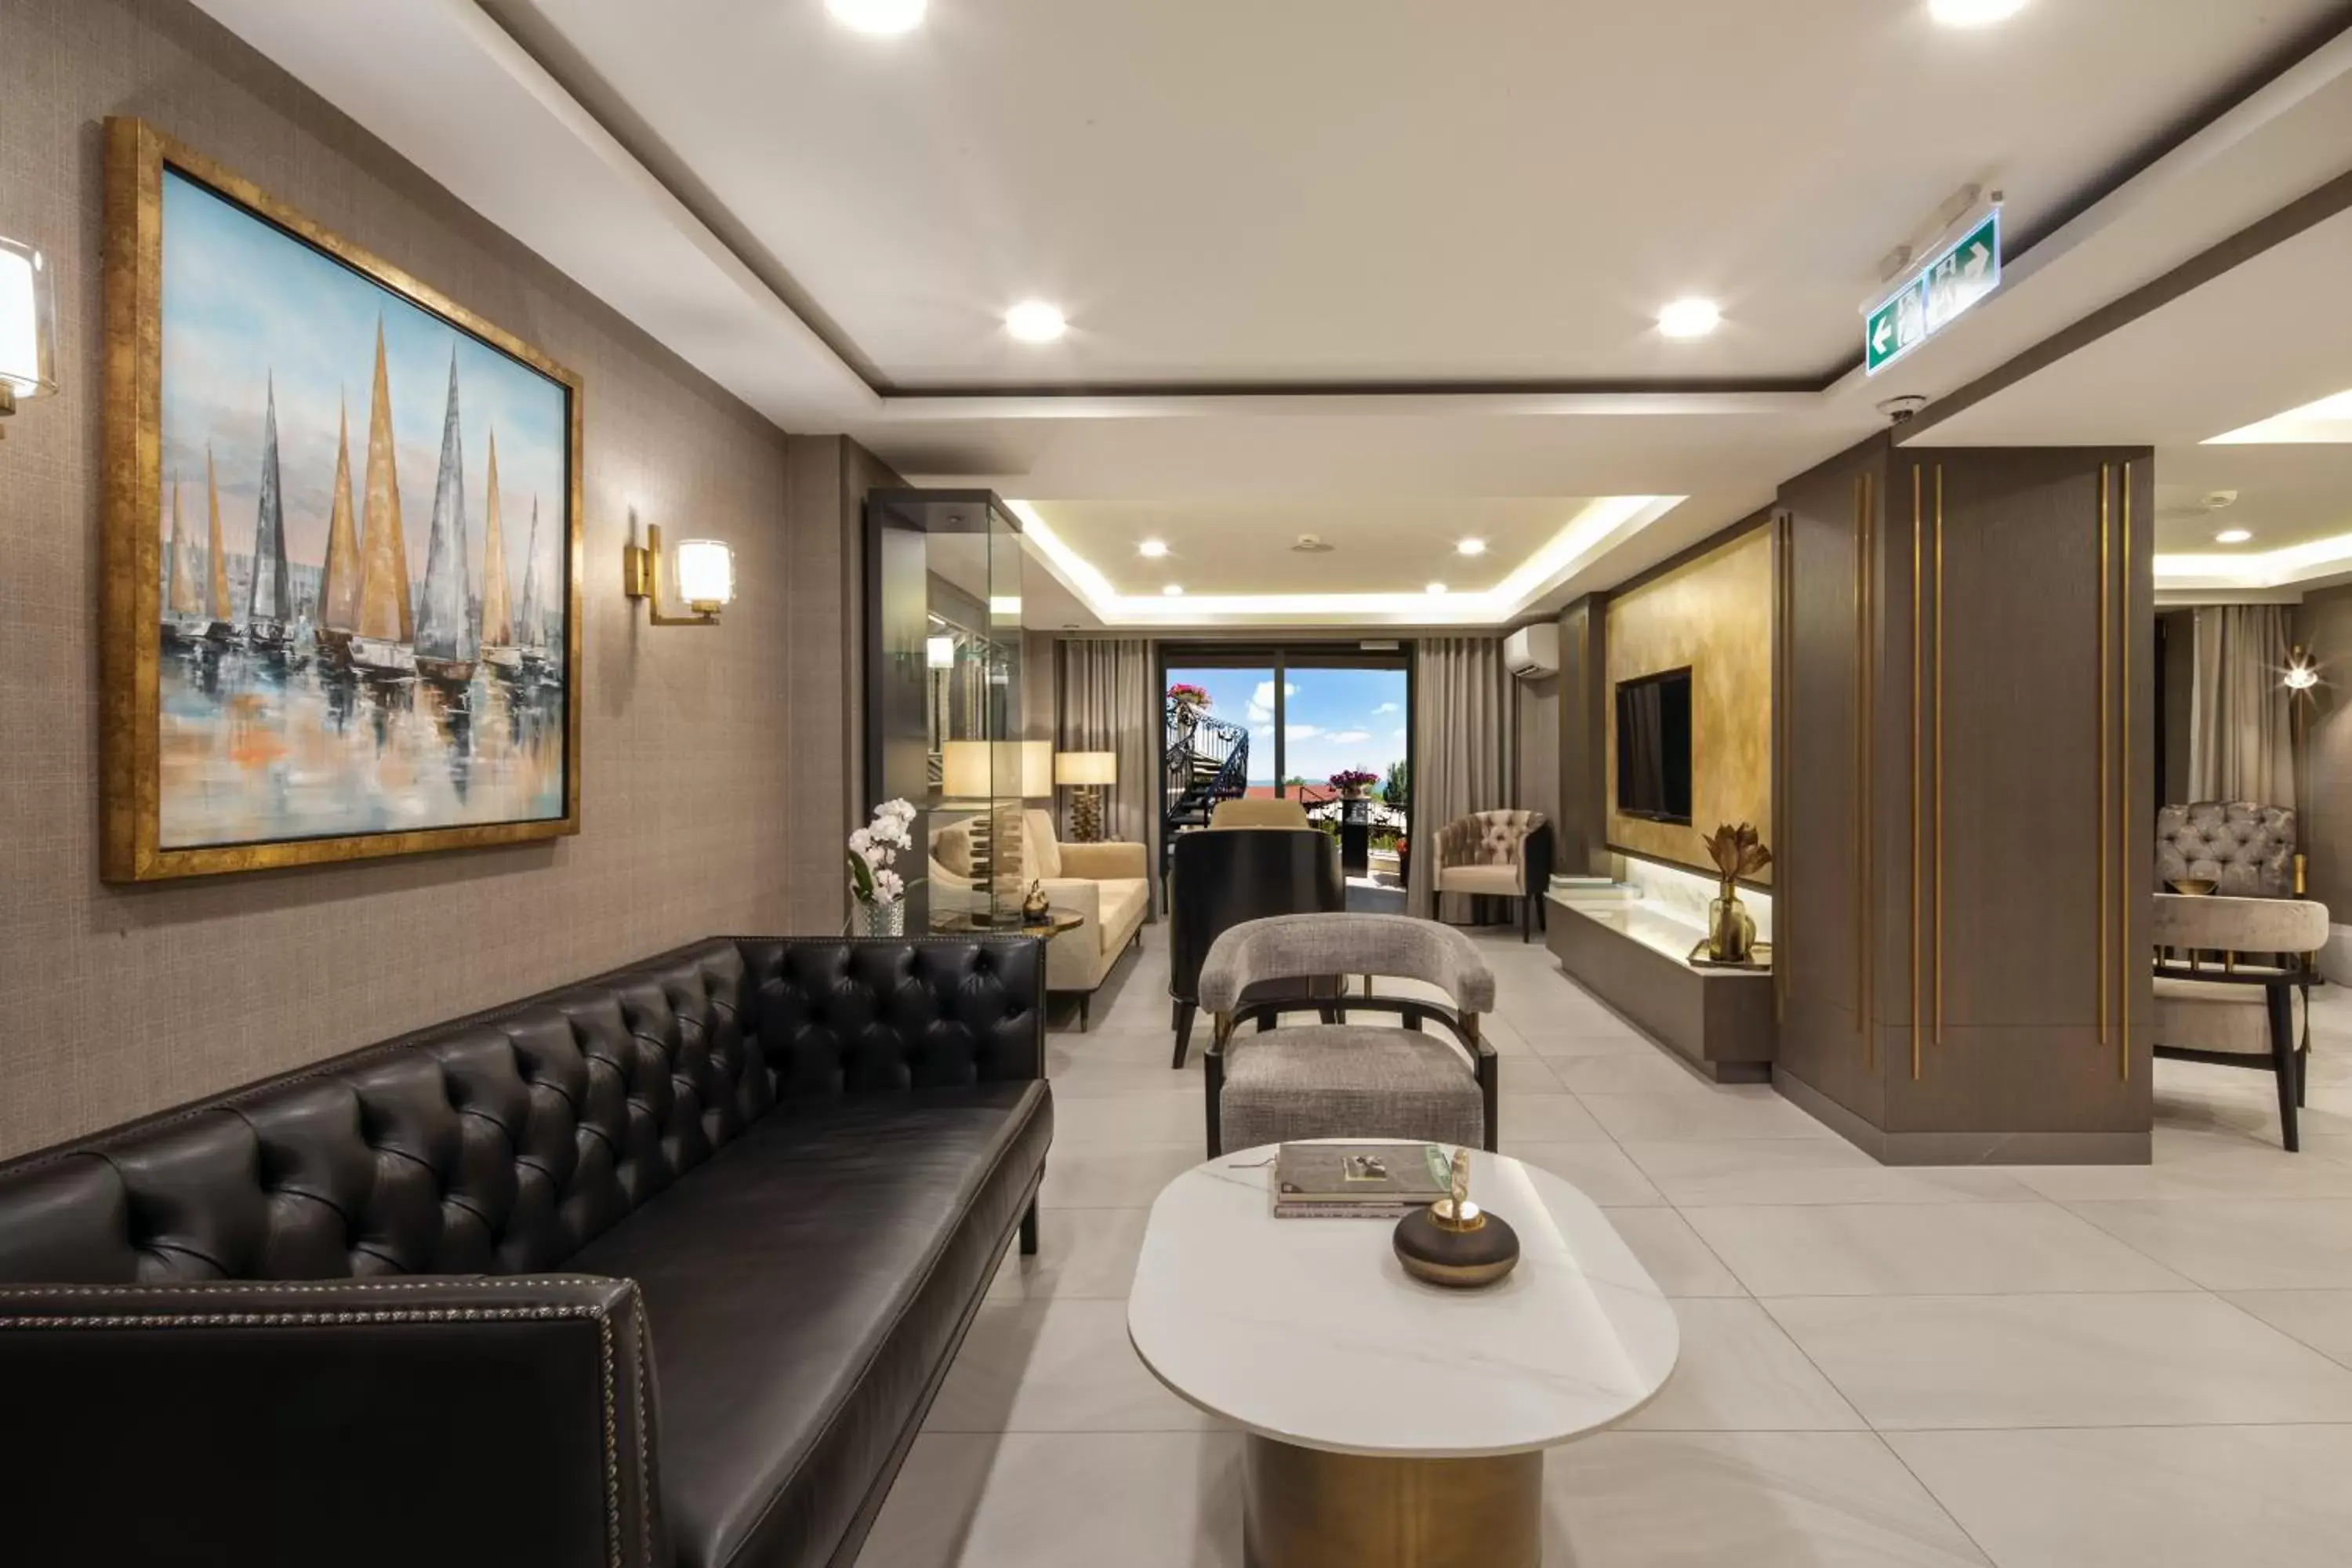 Lobby or reception in Mula Hotel